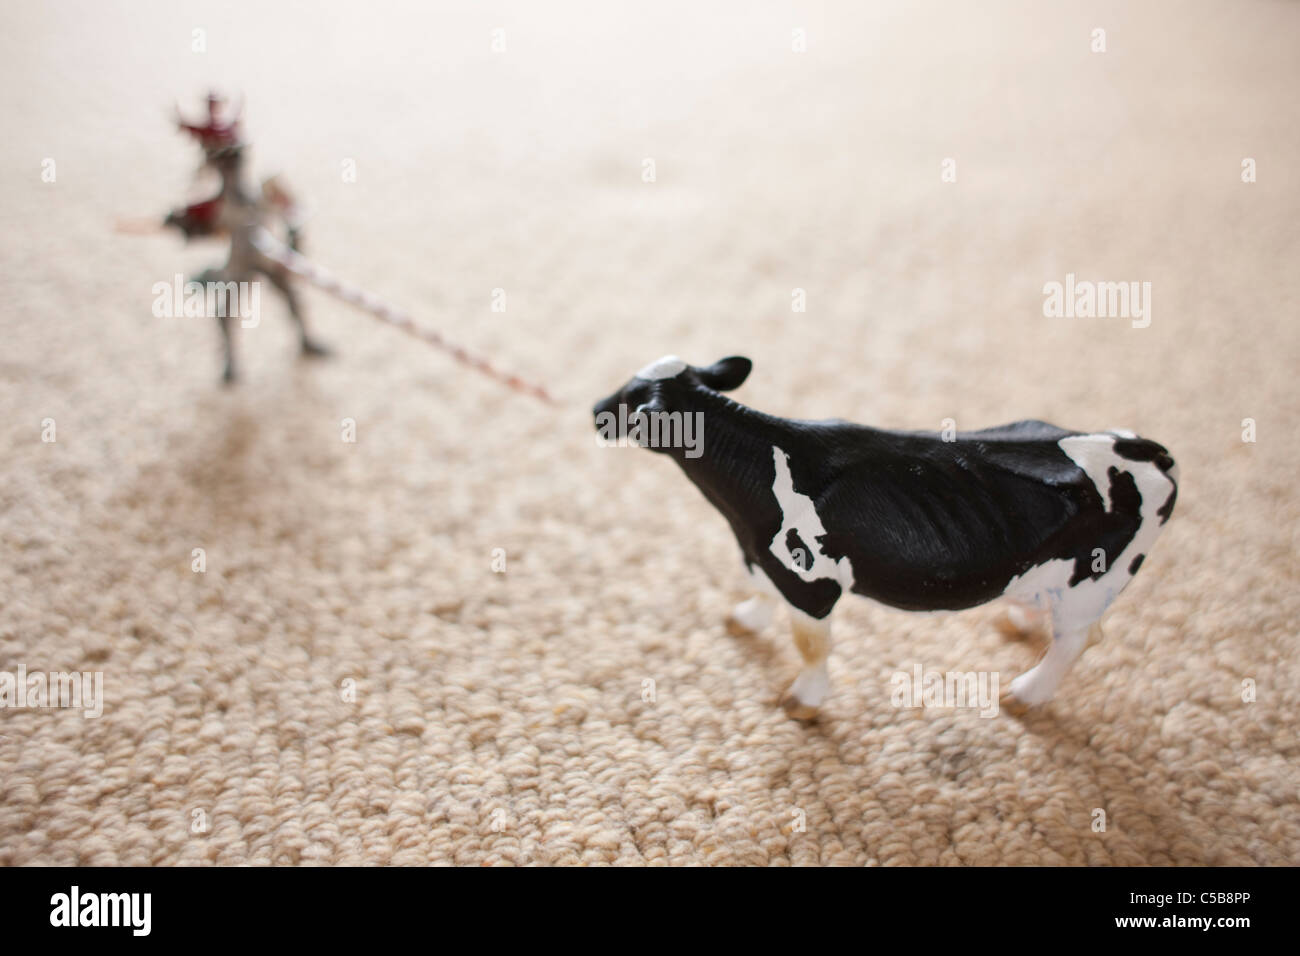 Spielzeug Kuh und Abbildung auf Teppich Stockfoto